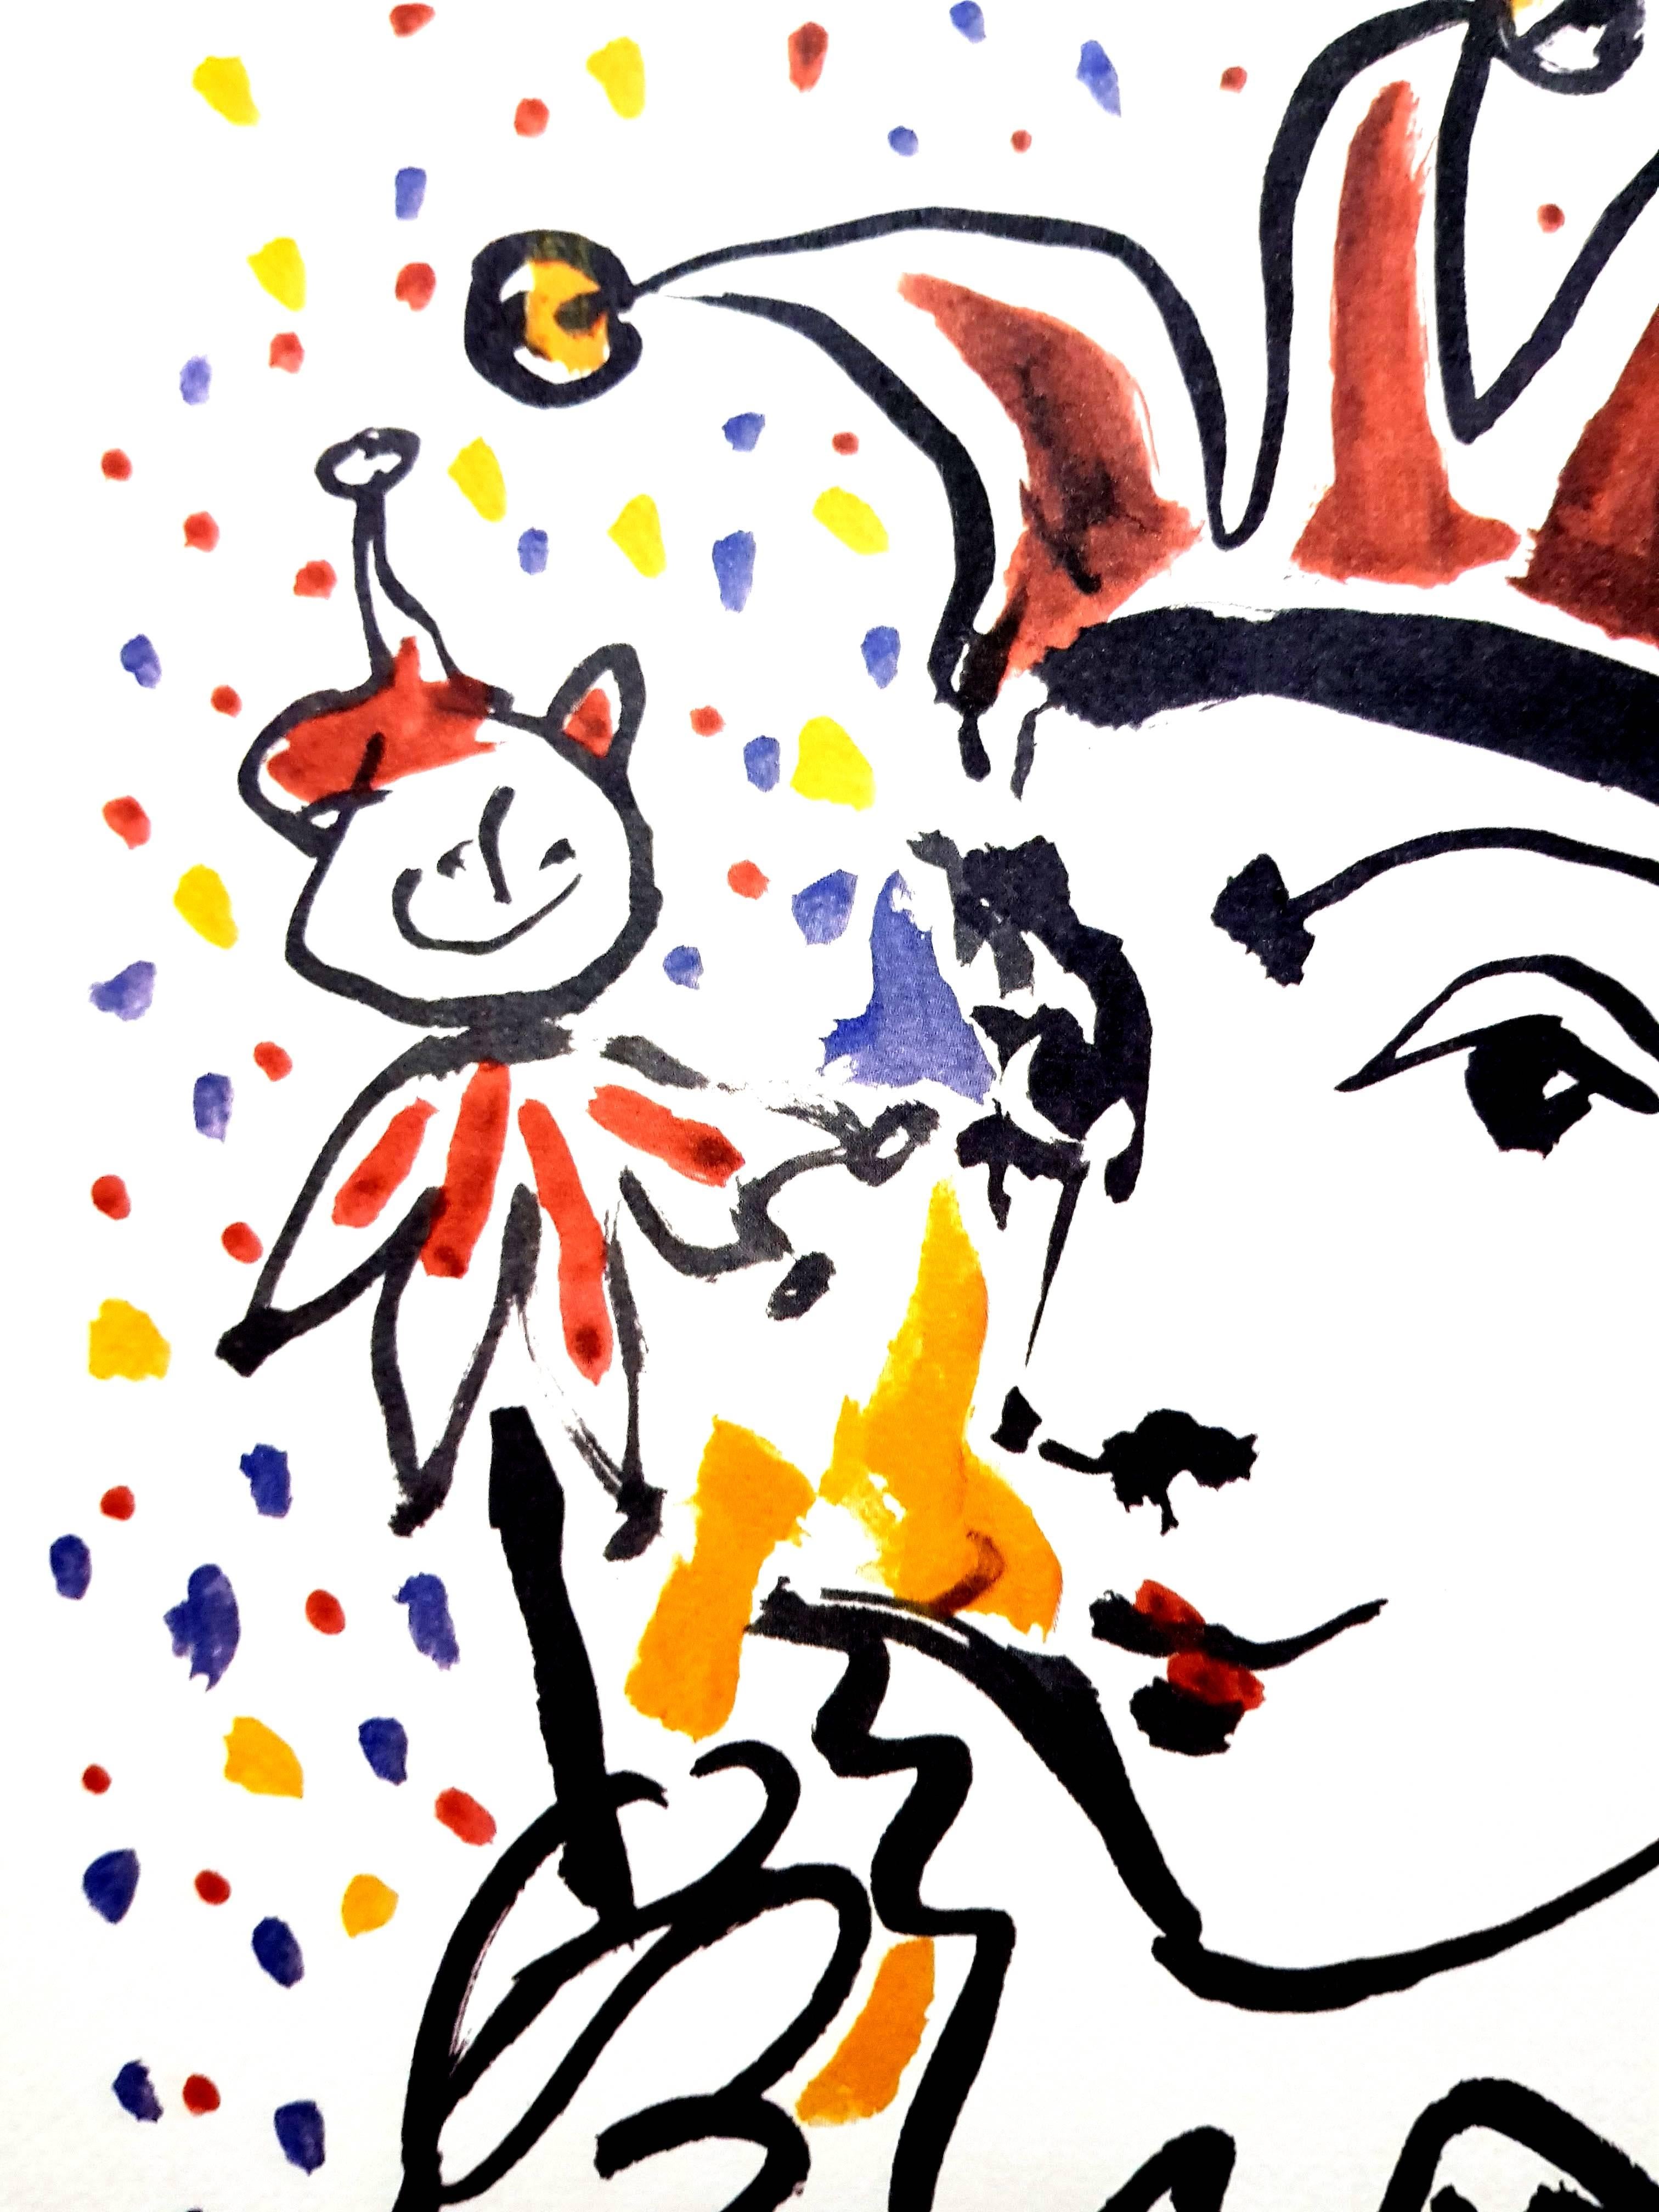 Nach PABLO PICASSO (1881-1973)
Carnaval
Abmessungen: 50 x 40 cm
Signiert und datiert in der Platte
Farblithographie auf Velin D'Arches nach einer Zeichnung
Edition Succession Picasso, Paris (posthume Reproduktionsausgabe)
Ausgaben von Paix